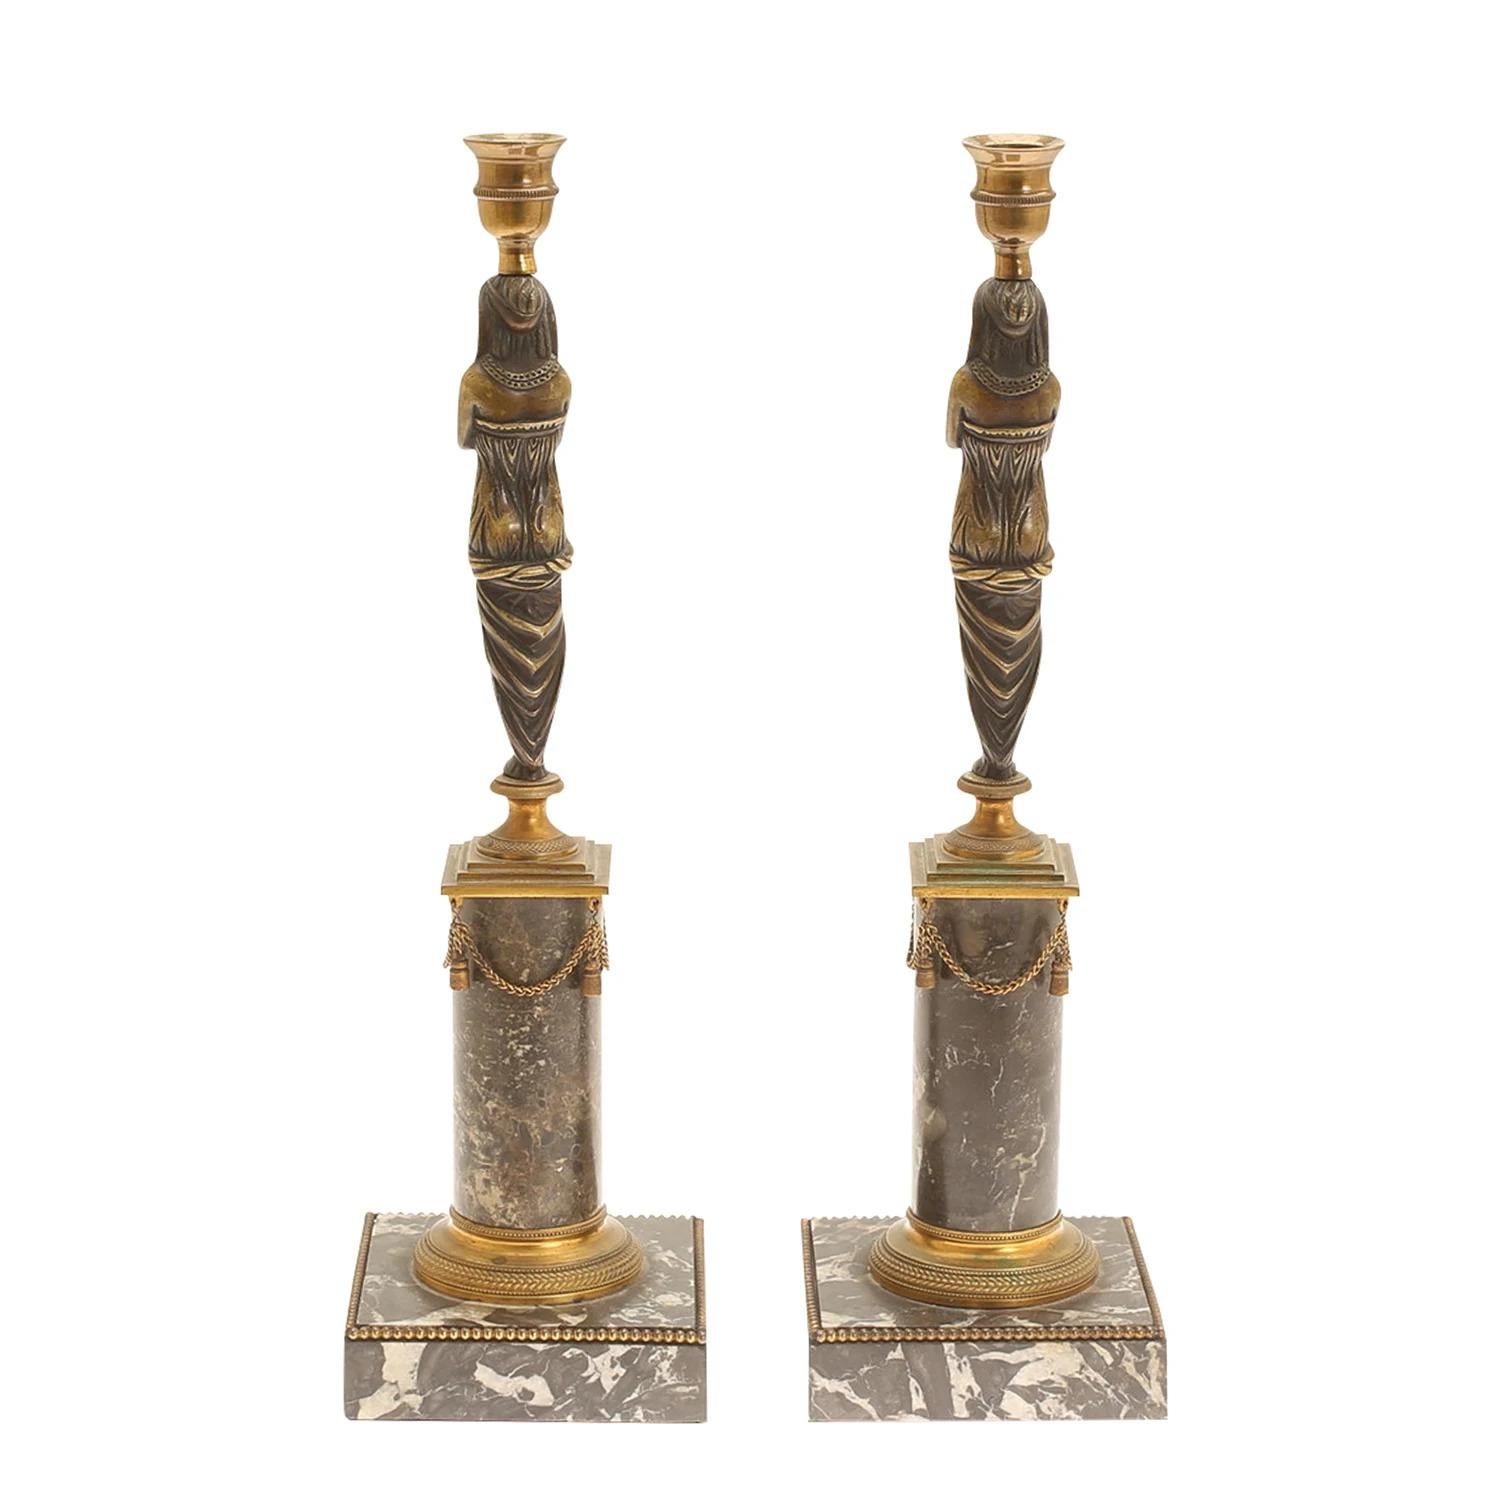 Ein goldenes, antikes französisches Paar ägyptischer Frauenfiguren-Kerzenhalter aus handgearbeitetem Marmor und patinierter Bronze, in gutem Zustand. Die Kerzenständer ruhen auf einem urnenförmigen Sockel. Die besonderen Pariser Dekorationsstücke